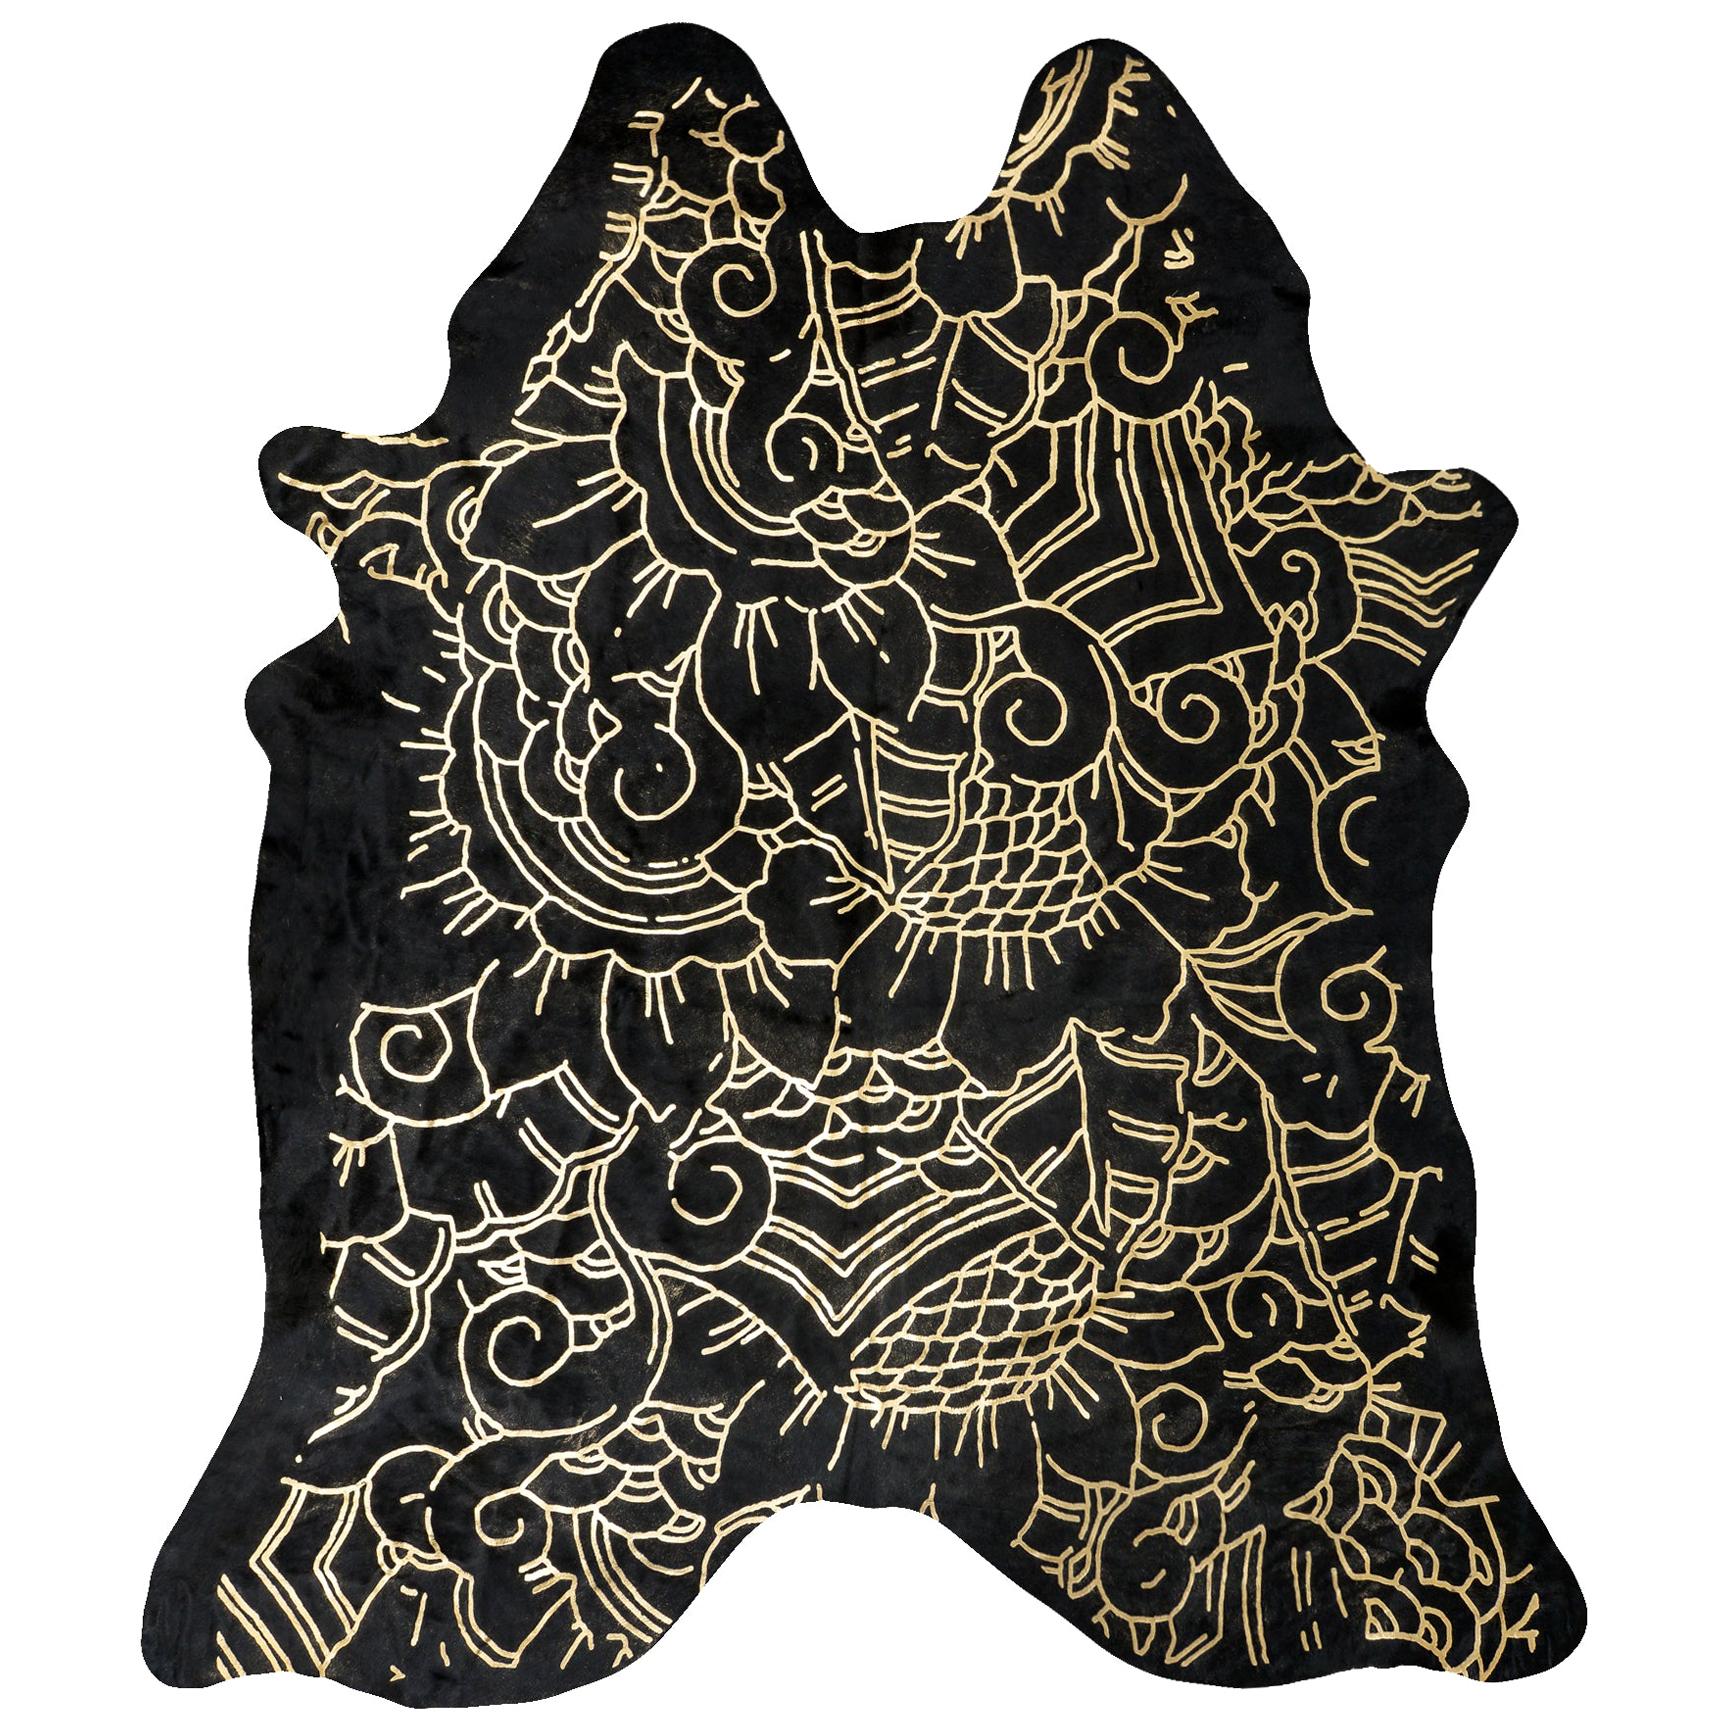 Gold Metallic Boho Batik Pattern Black Cowhide Rug, Medium